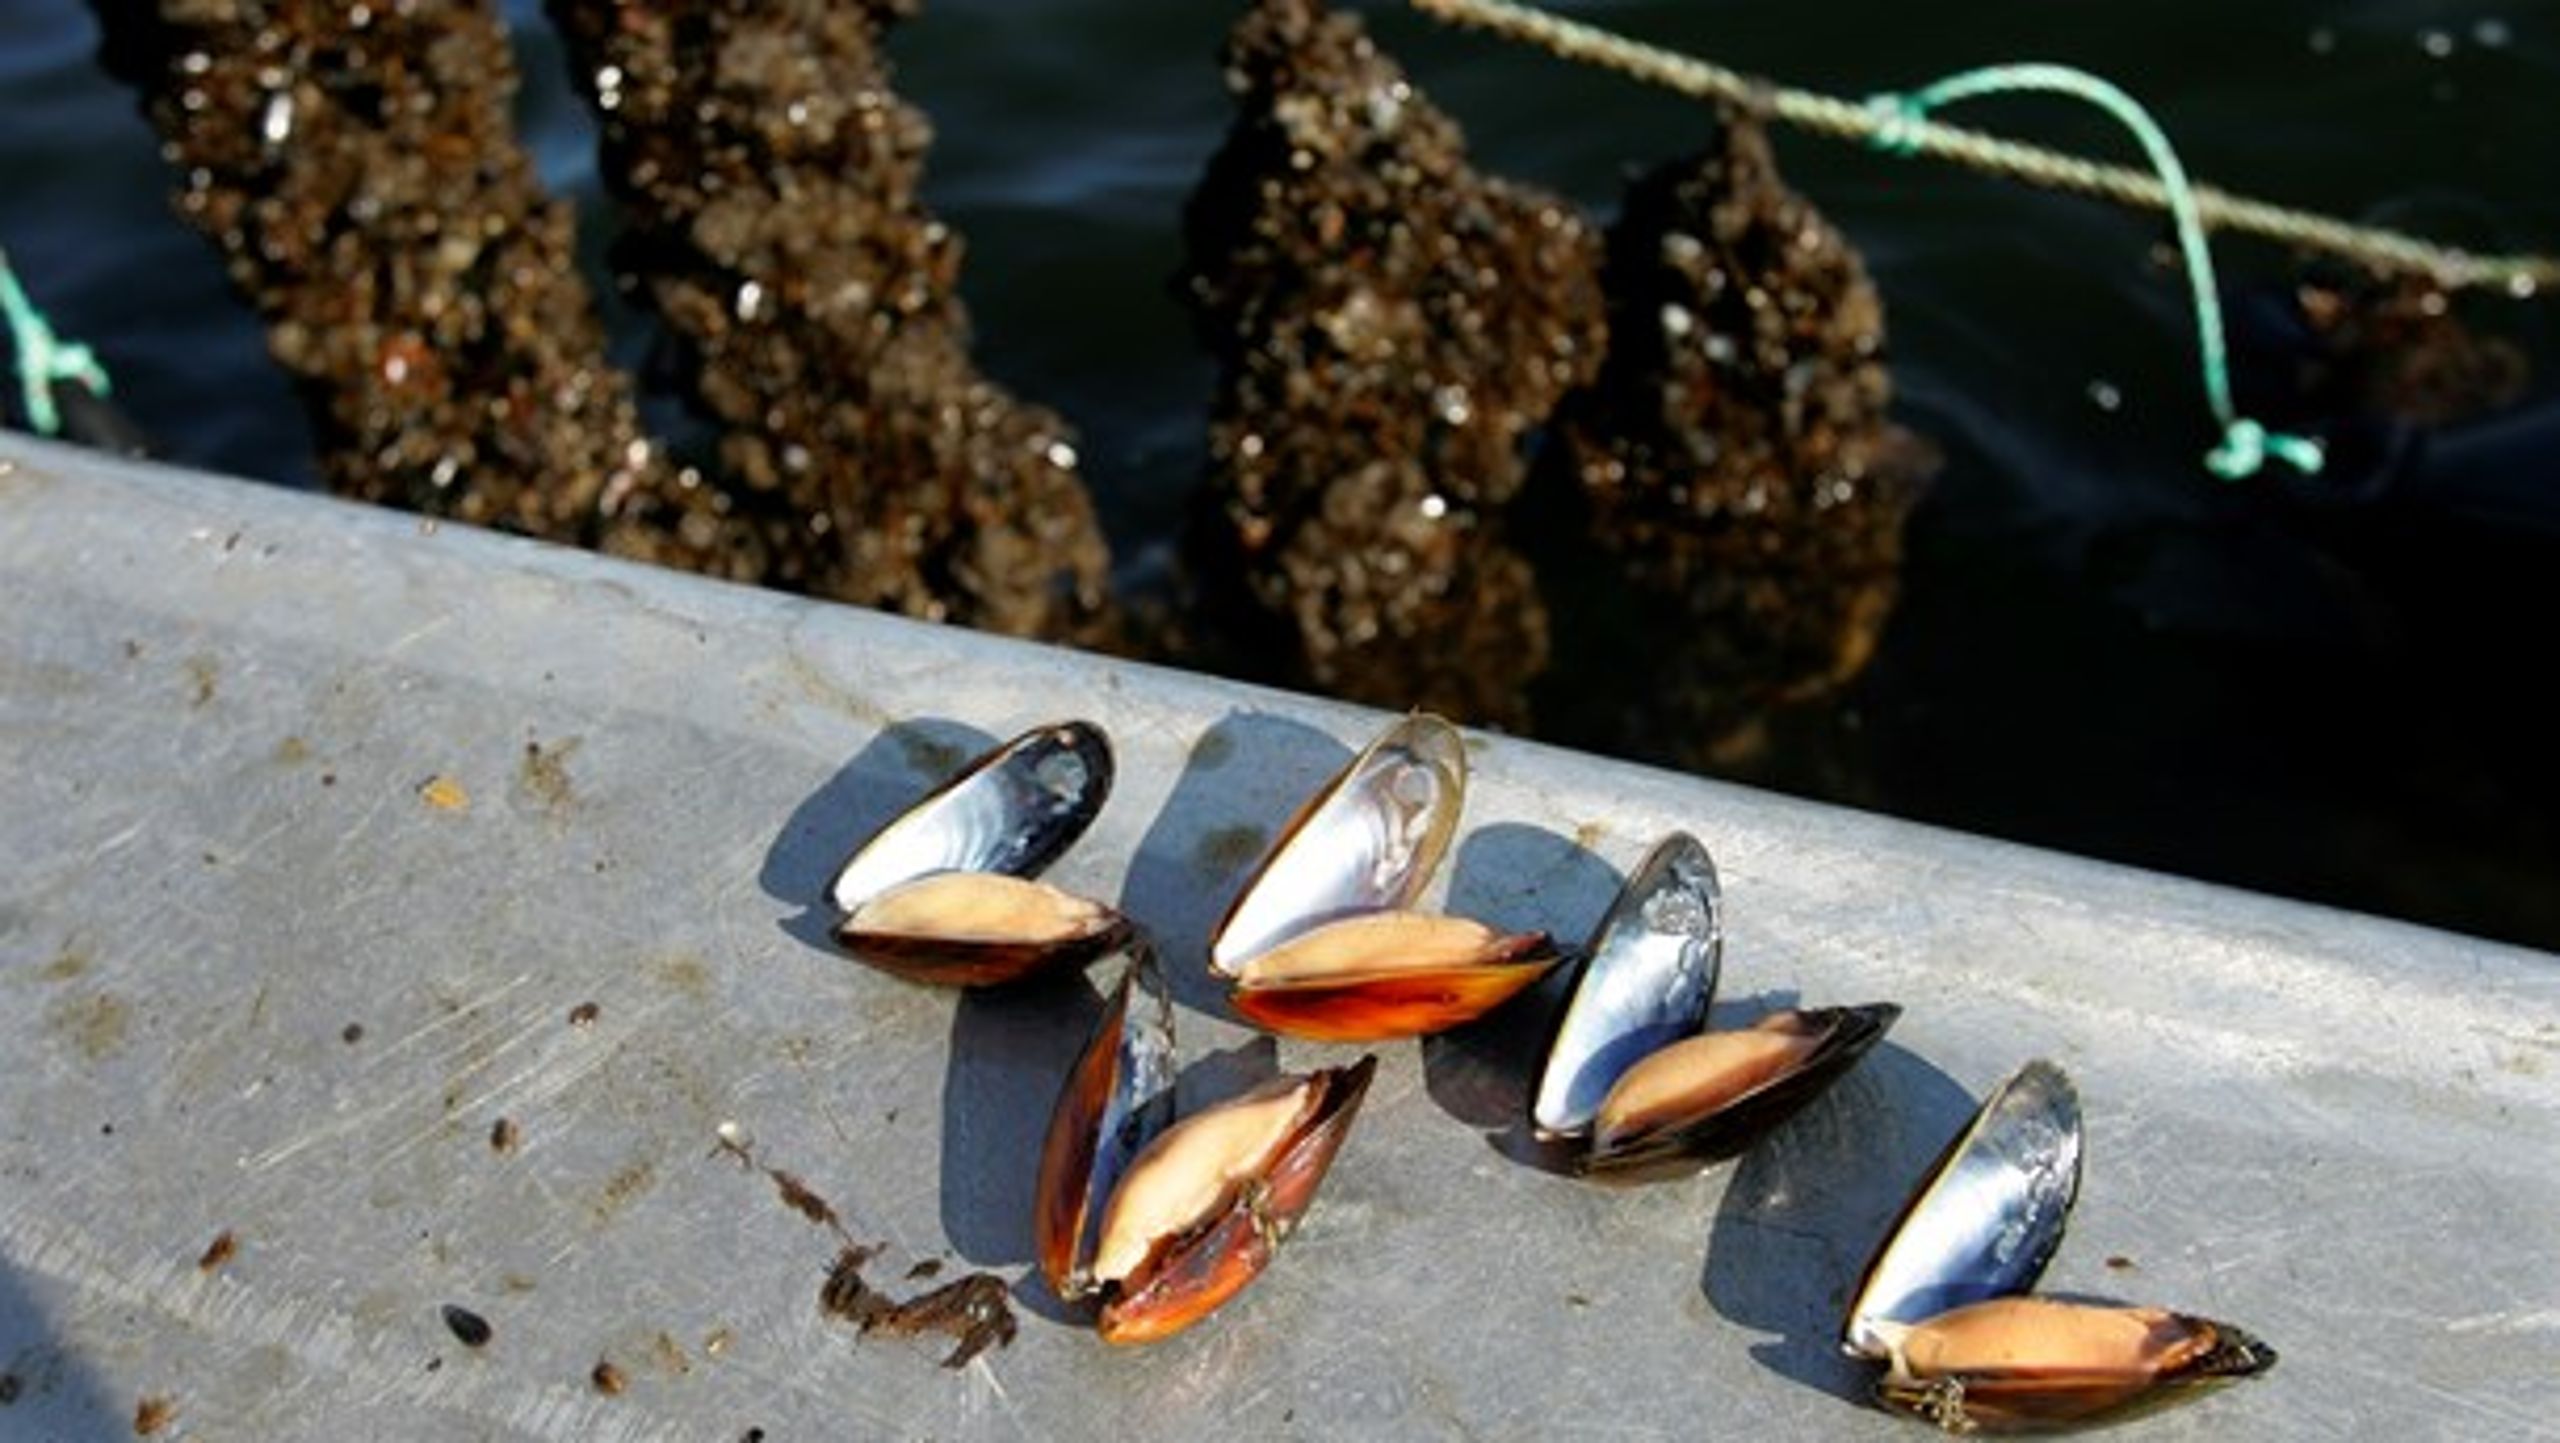 Det faglige grundlag og effekten af muslingeopdræt som marint virkemiddel er biologisk og teknisk dokumenteret, mener Dansk Akvakultur.